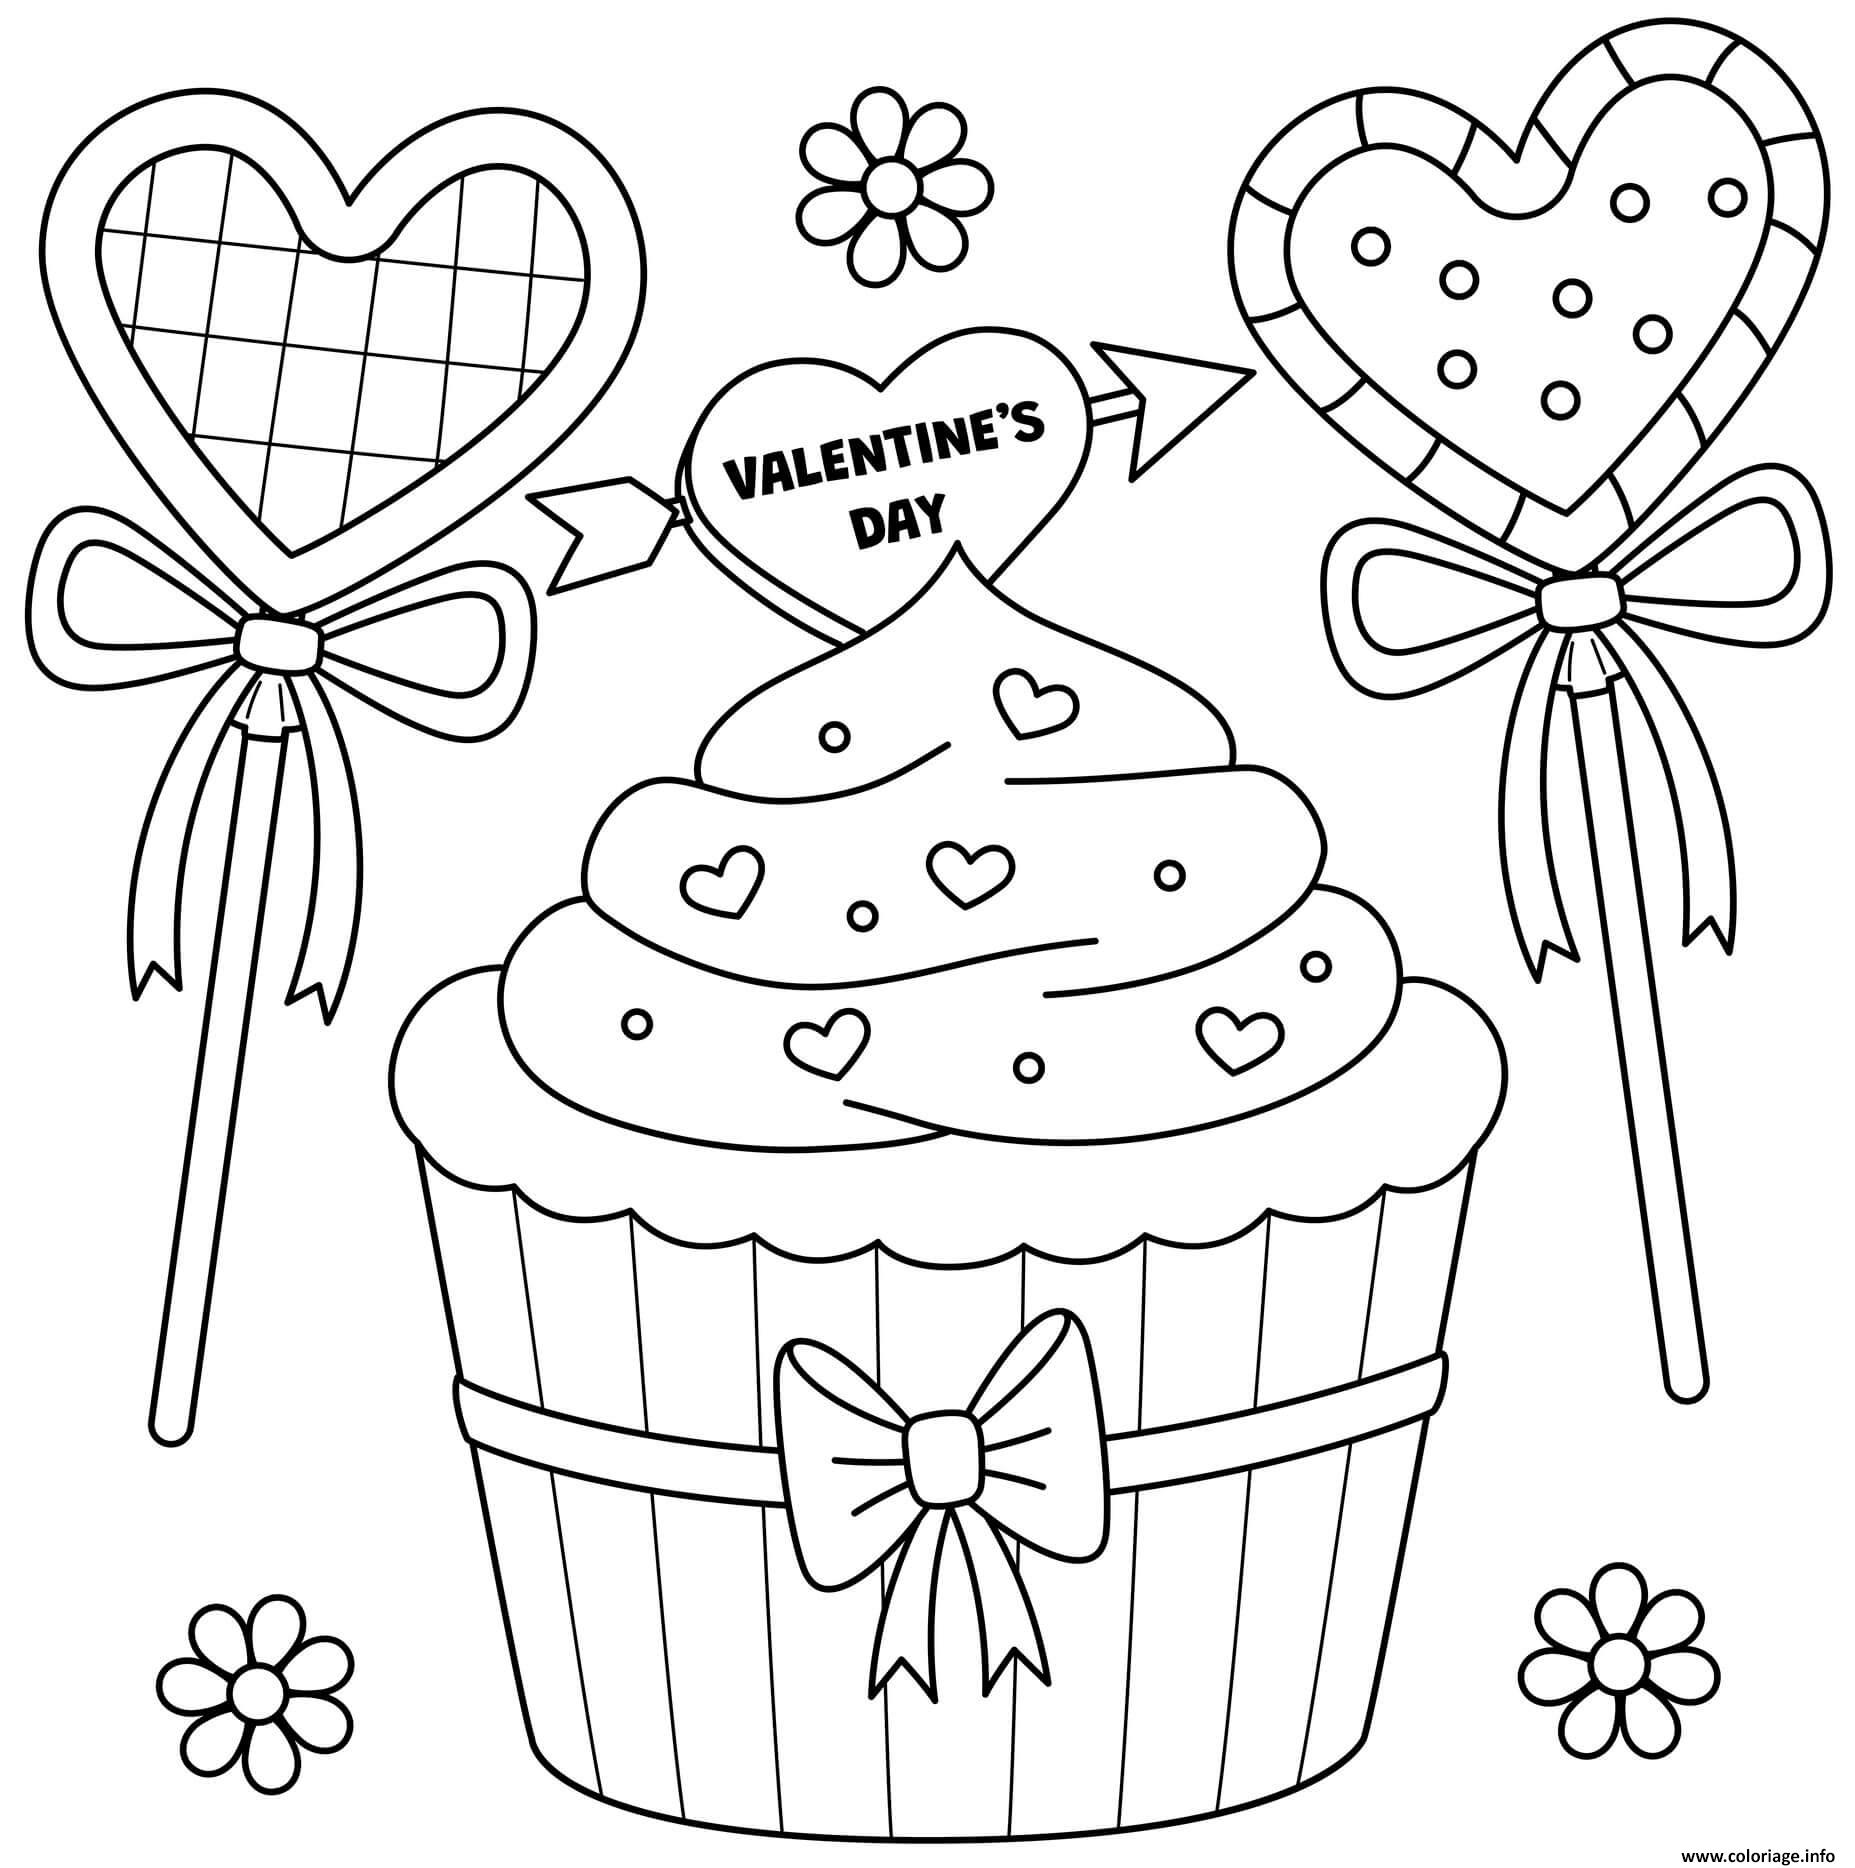 Dessin cupcake de la saint valentin pour fevrier Coloriage Gratuit à Imprimer